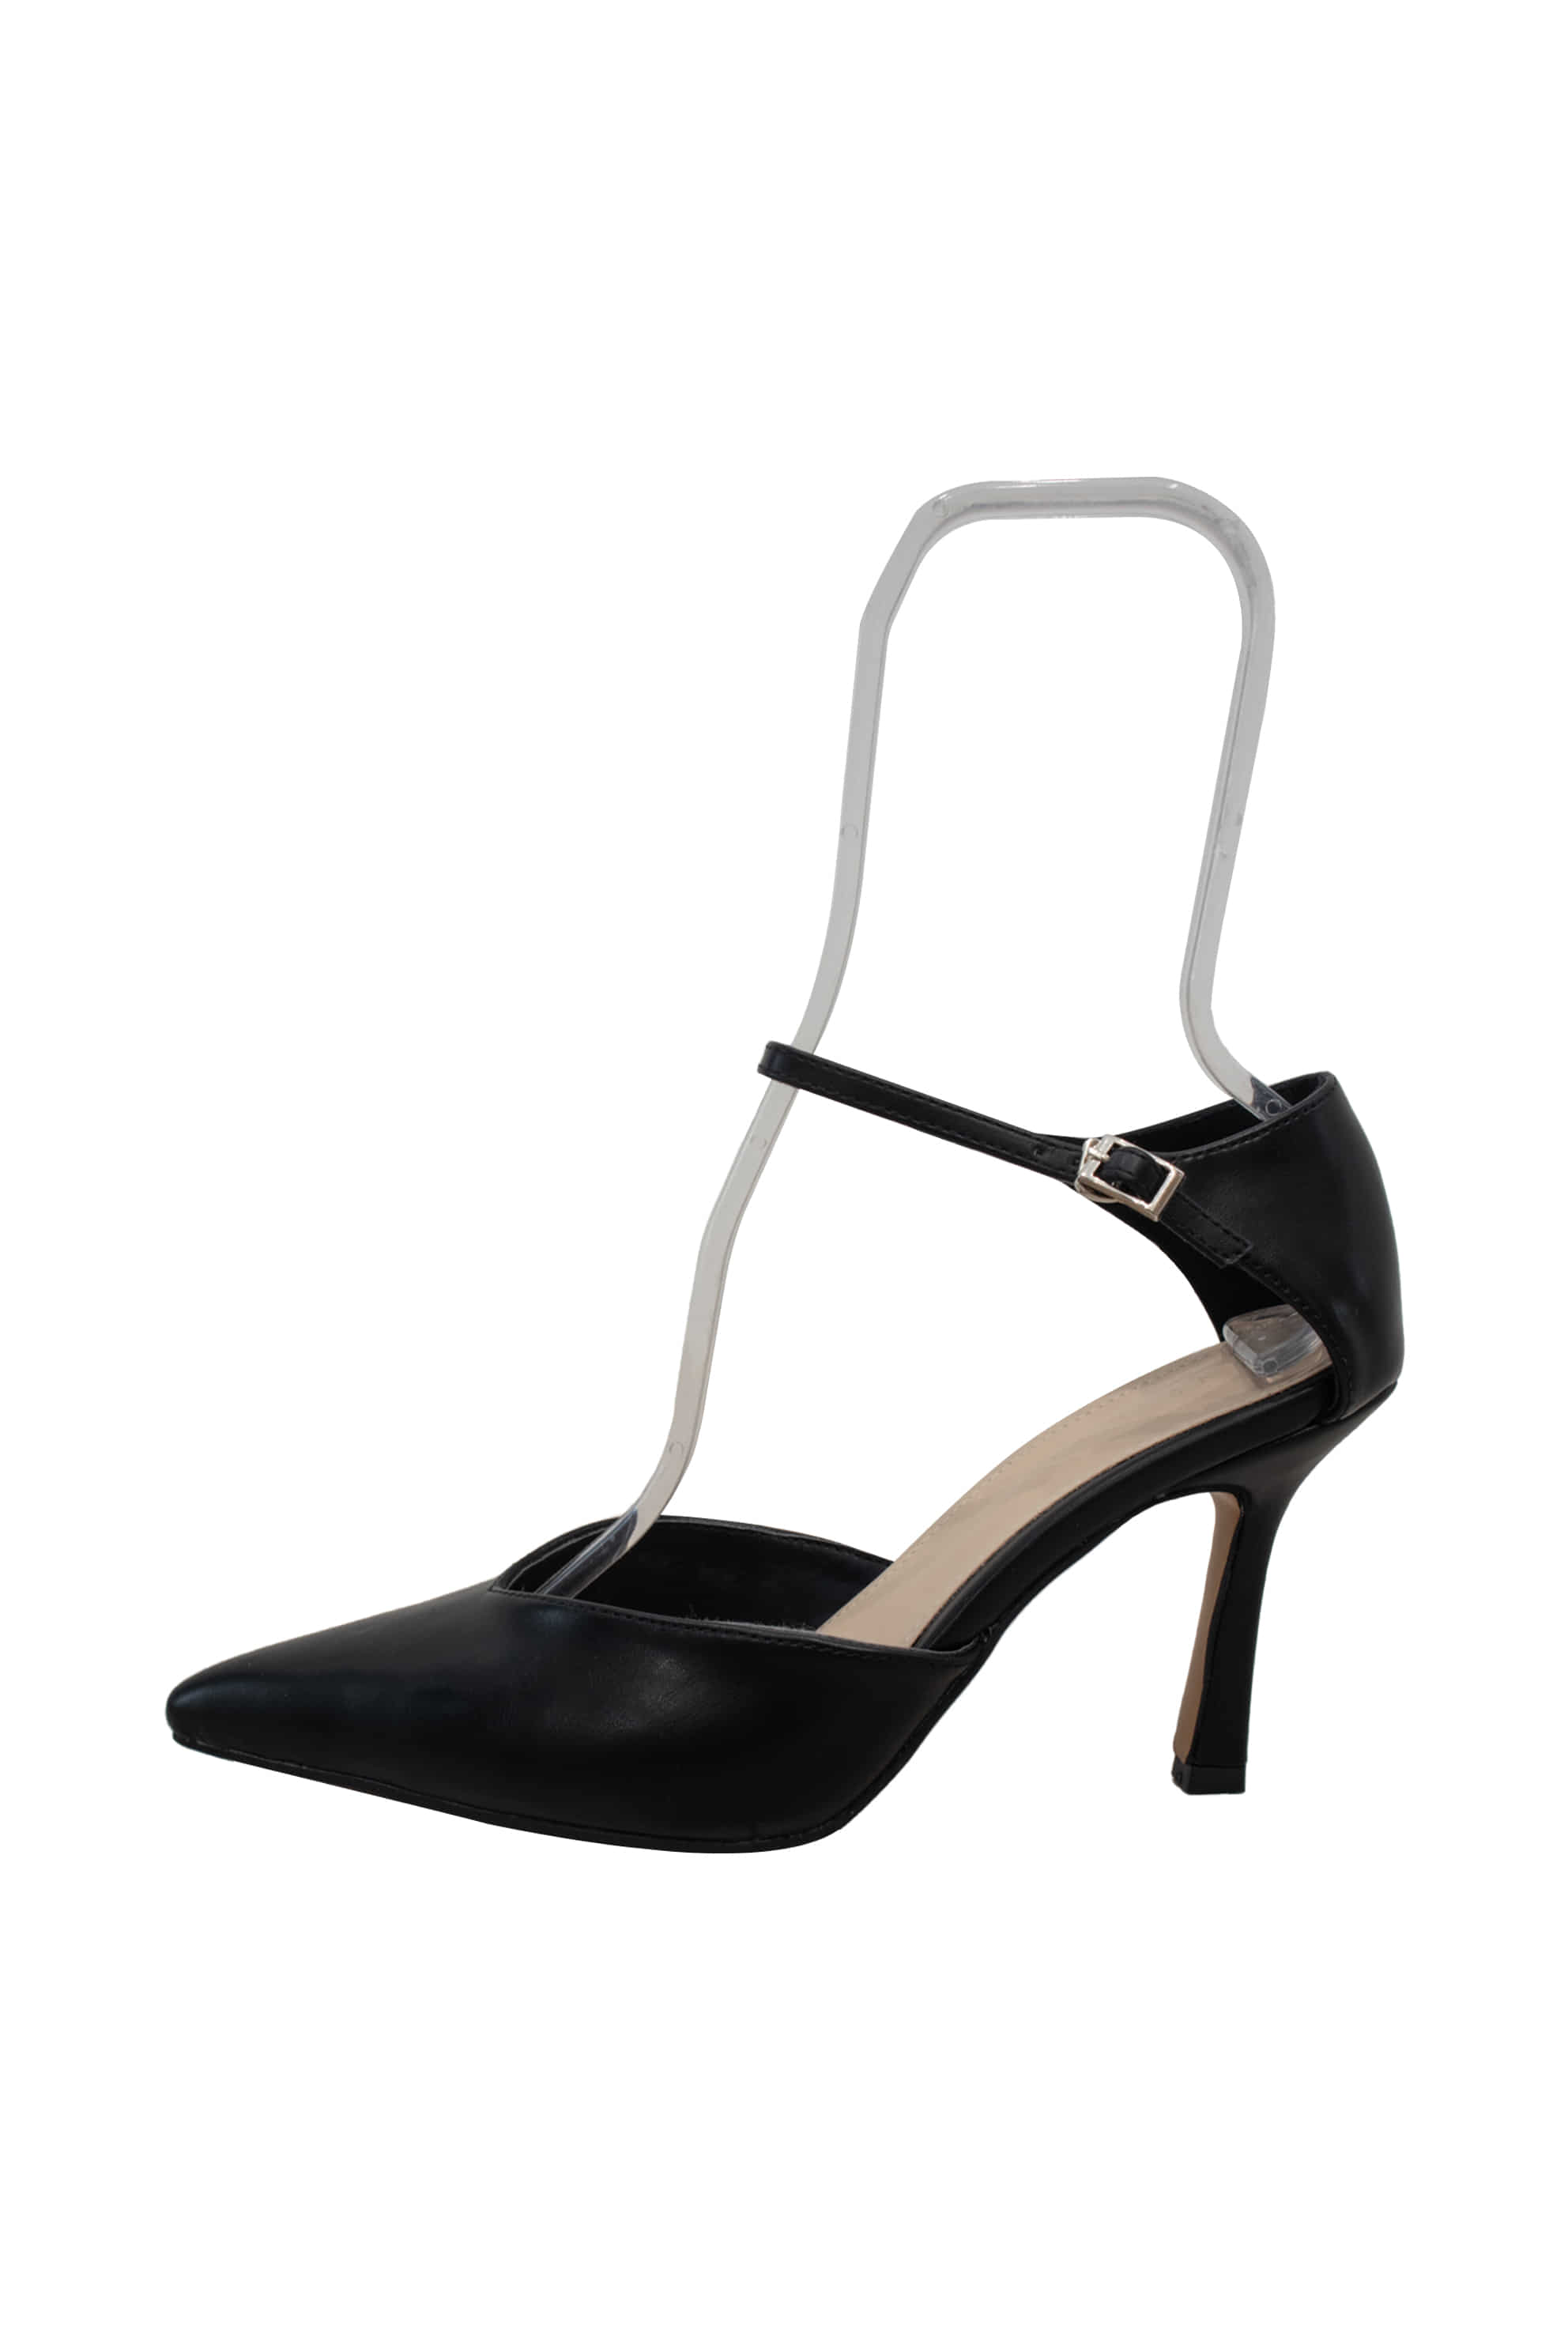 Ankle strap stiletto heel